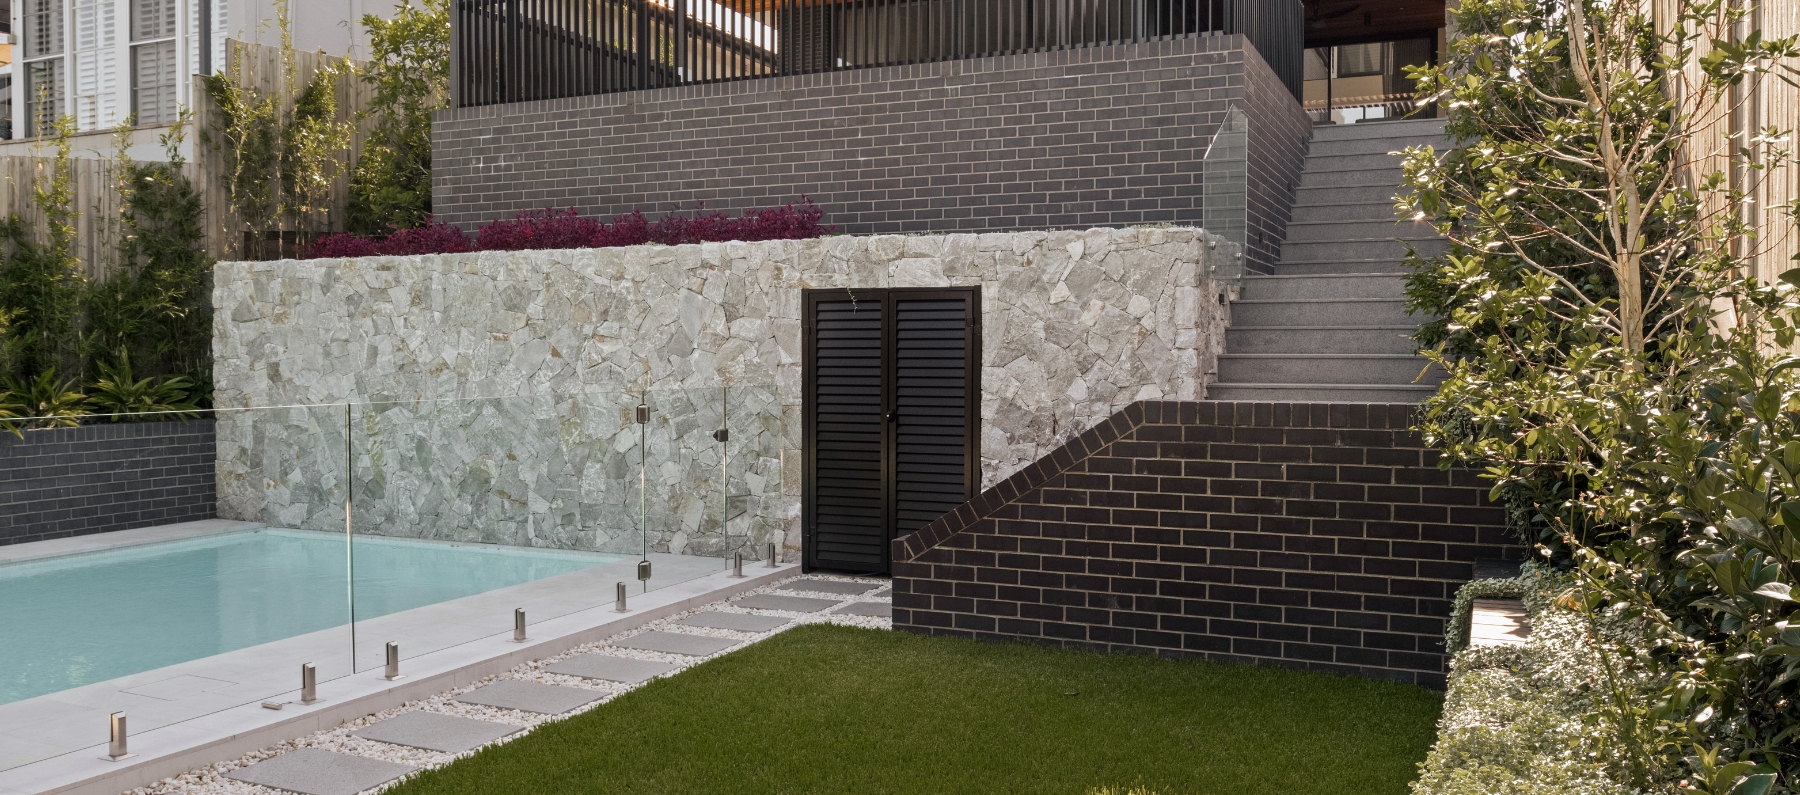 Kingsford Residence_pool_Luna Chiaro Limestone _Hotham Stone Wall Cladding_Silhouette granite stairs